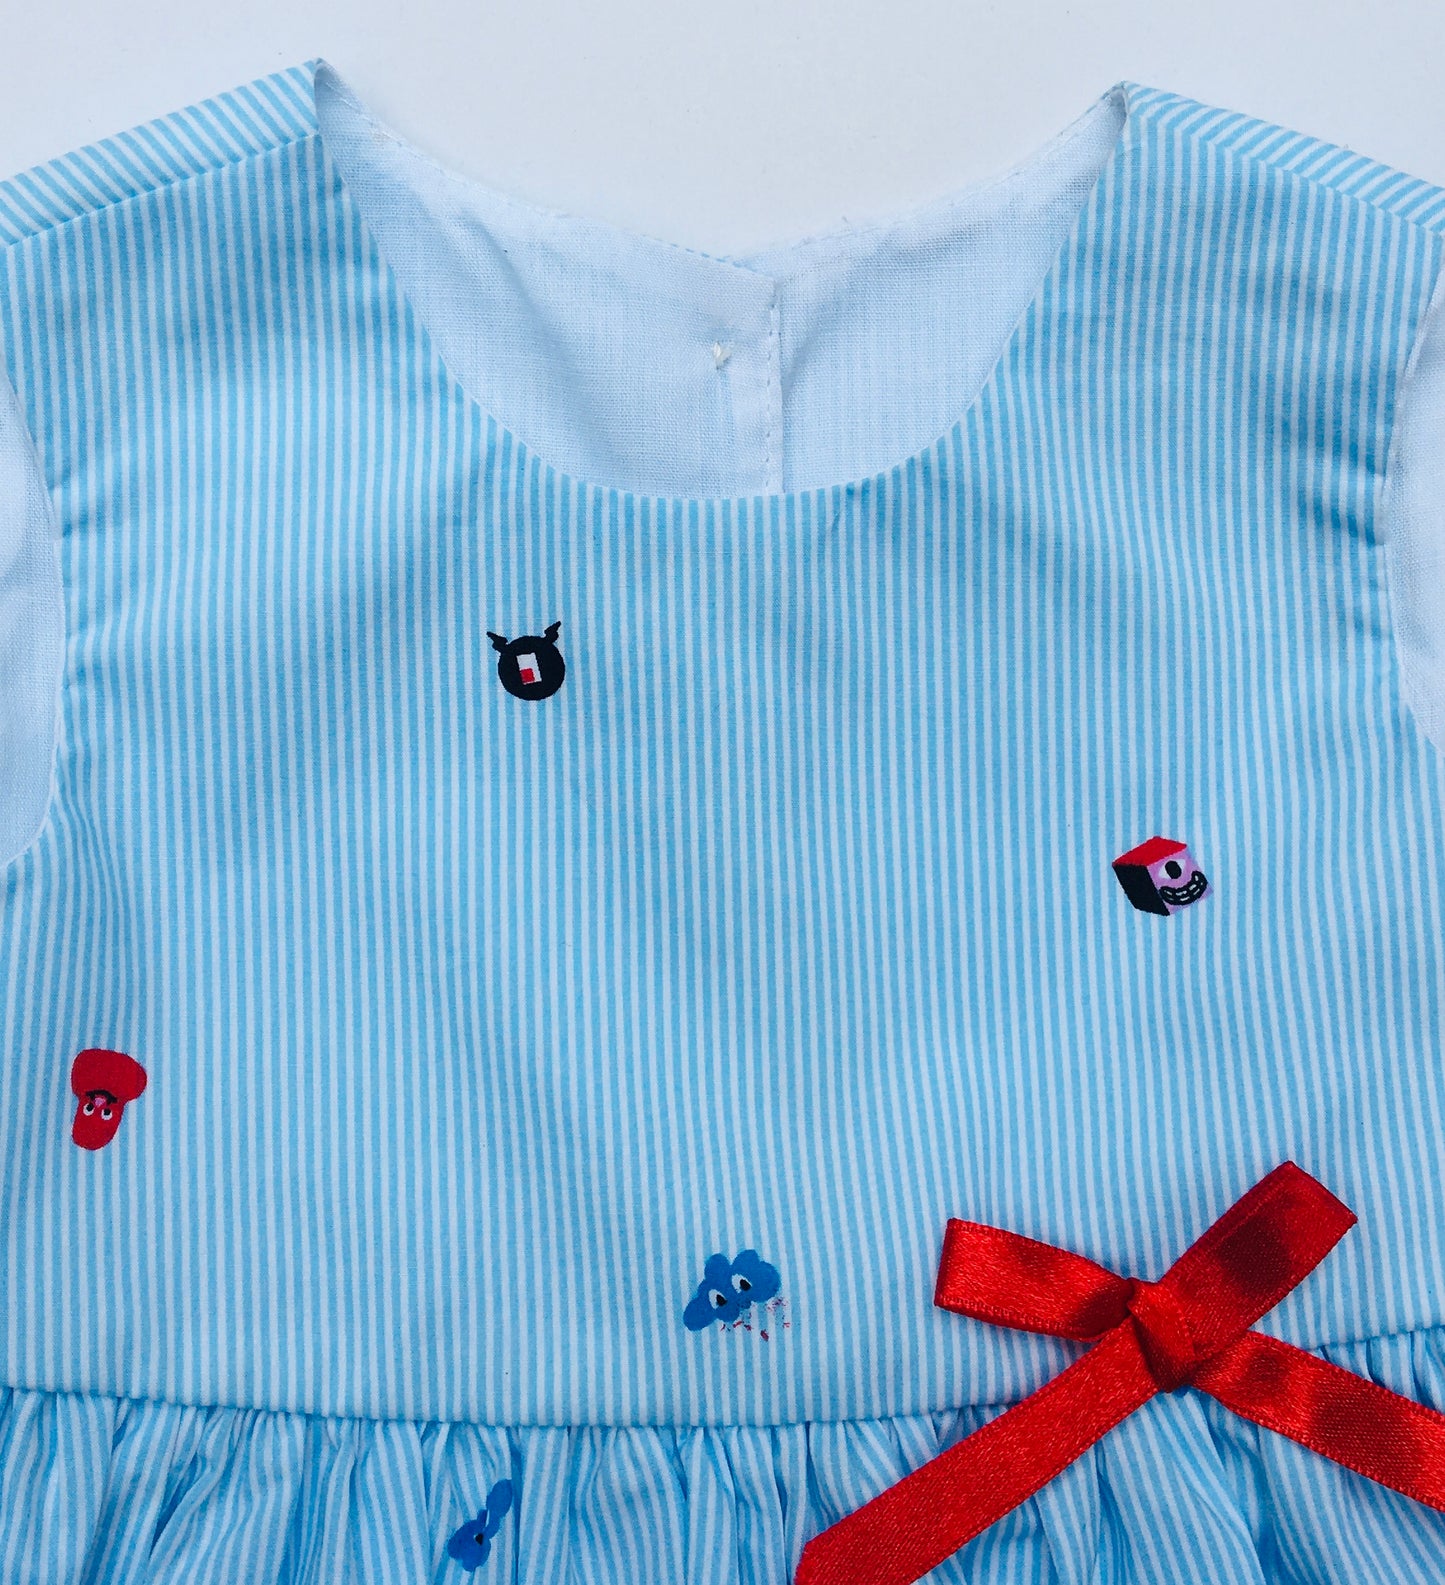 Light Blue Toddler girl Dress